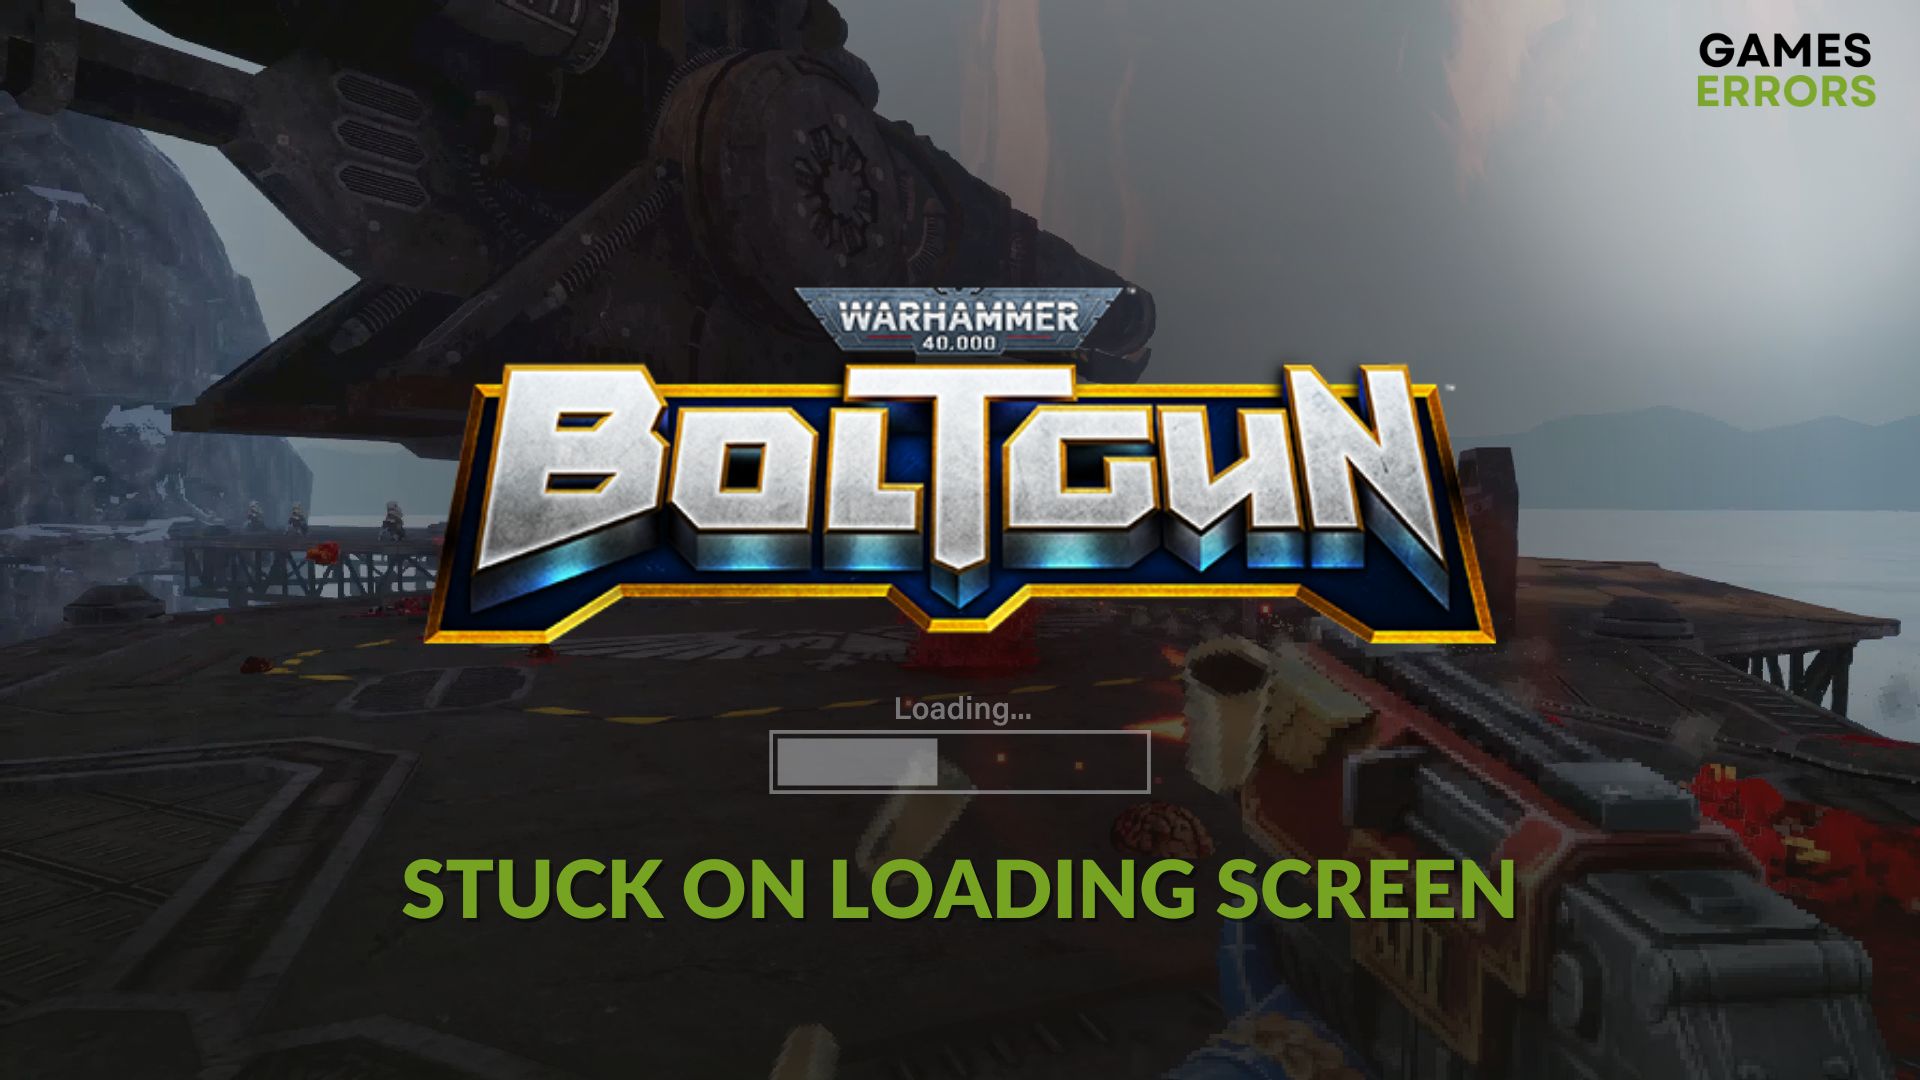 Fix Warhammer 40000 Boltgun stuck on loading screen